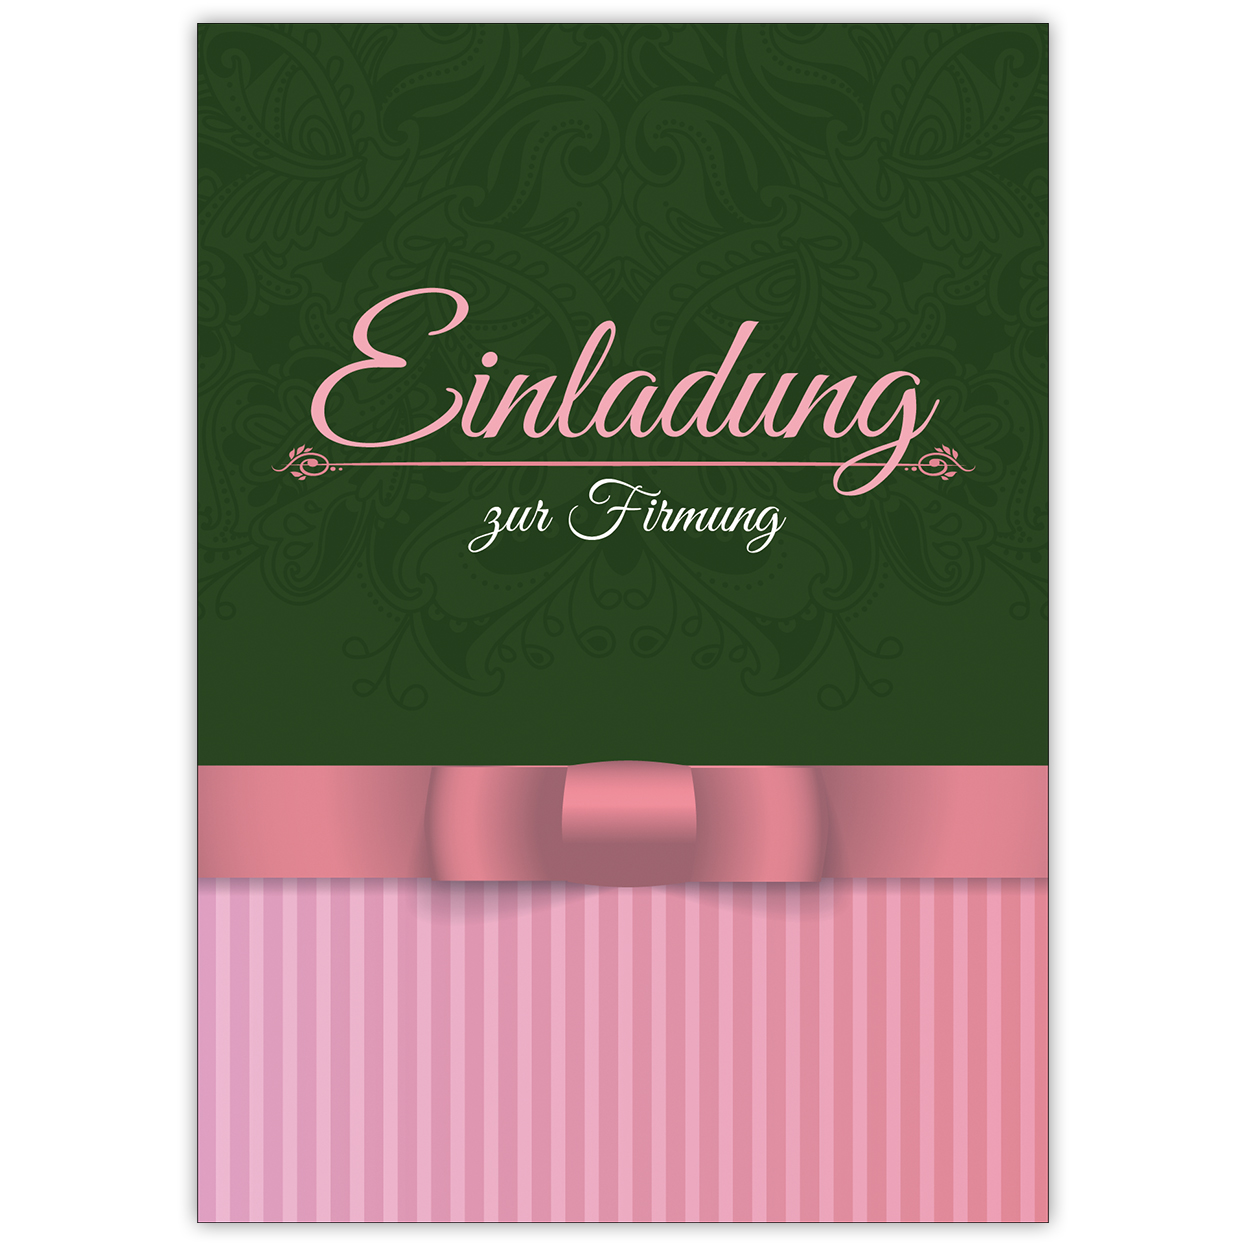 Klassische elegante Einladung zur Firmung in grün, rosa